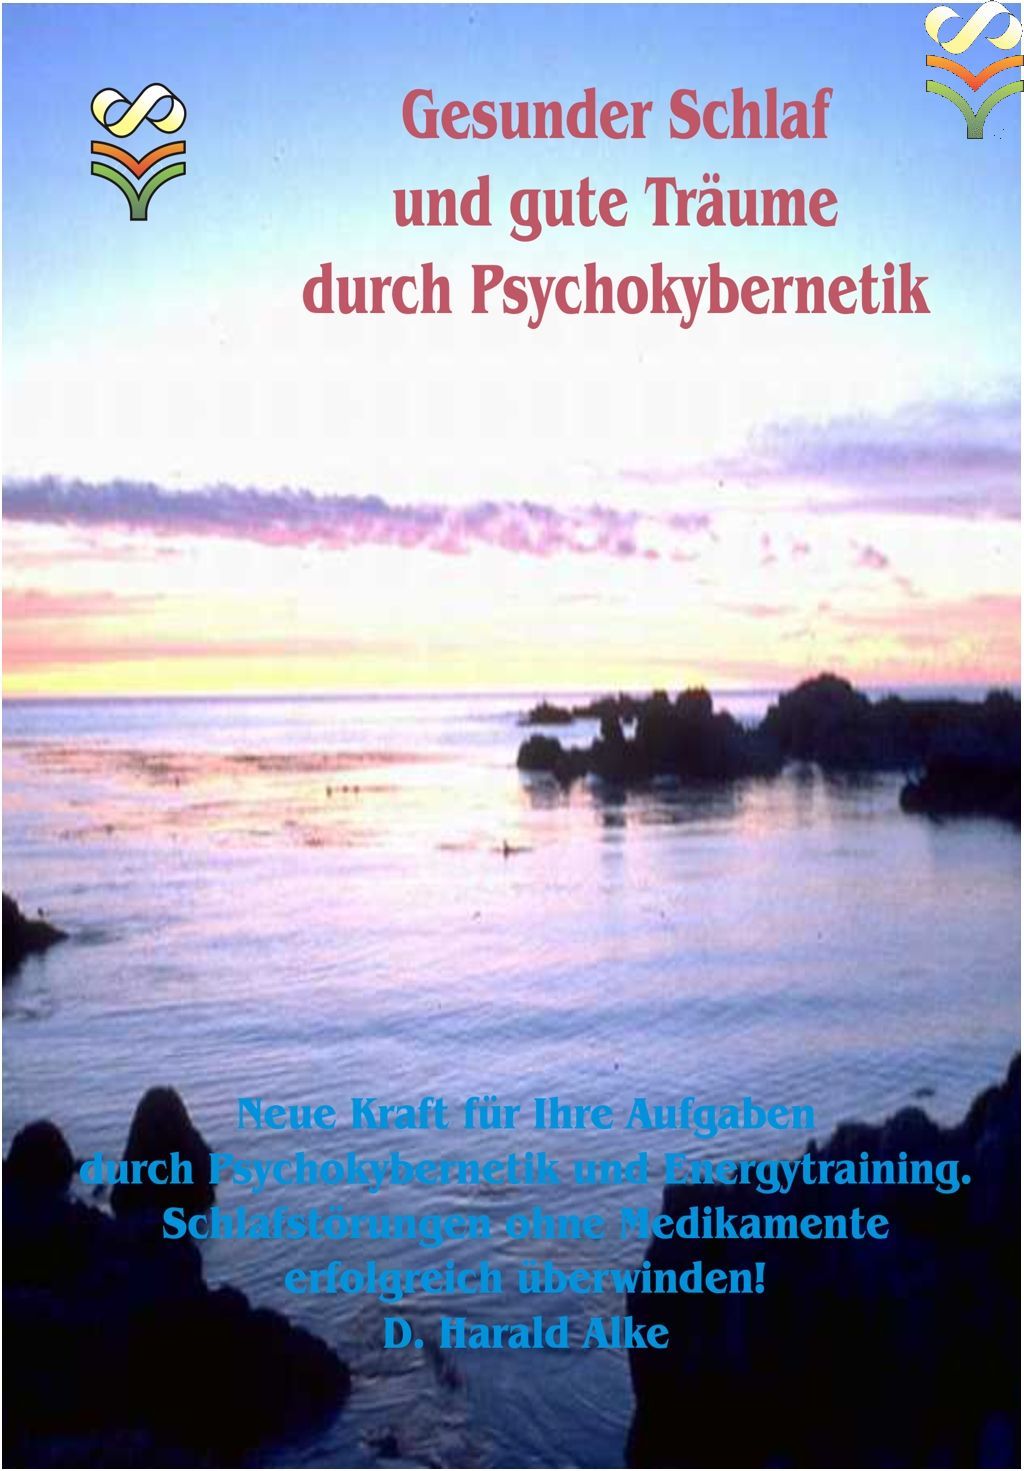 Gesunder Schlaf und gute Träume durch Psychokybernetik [Kyborg-Training | 113 Seiten & CD in Box] 5052